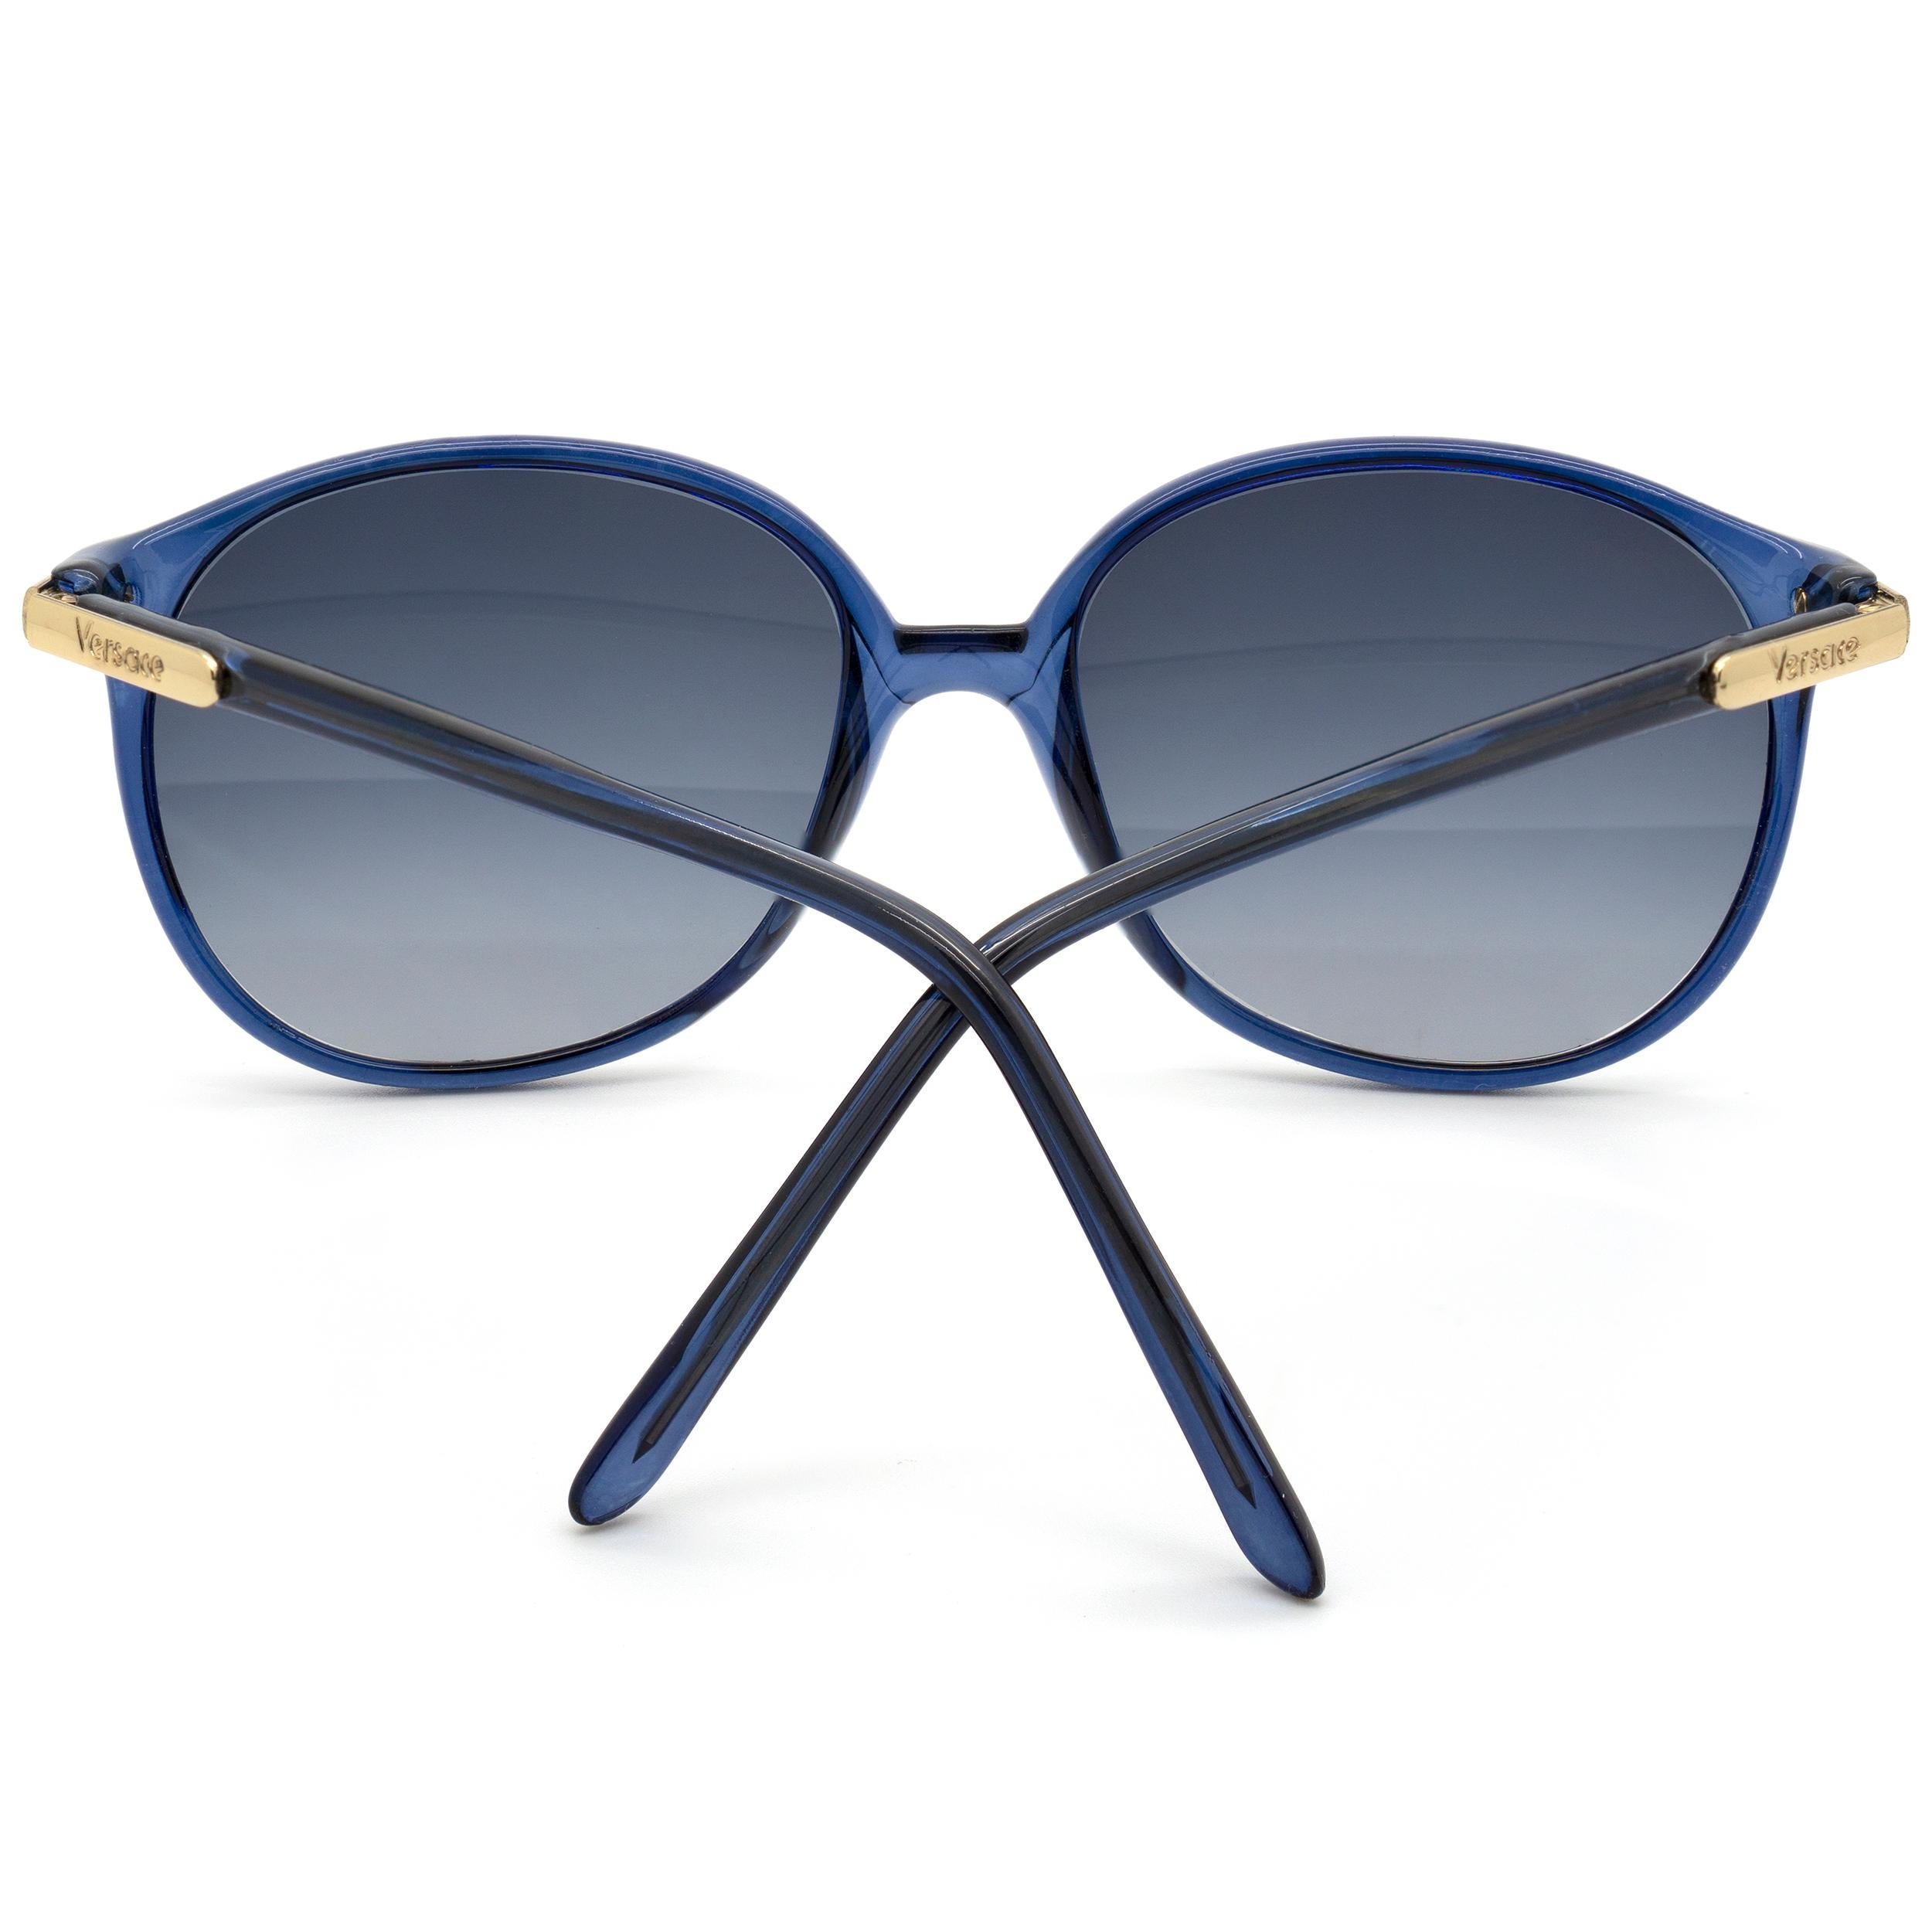 Gianni Versace sunglasses for women In New Condition For Sale In Santa Clarita, CA